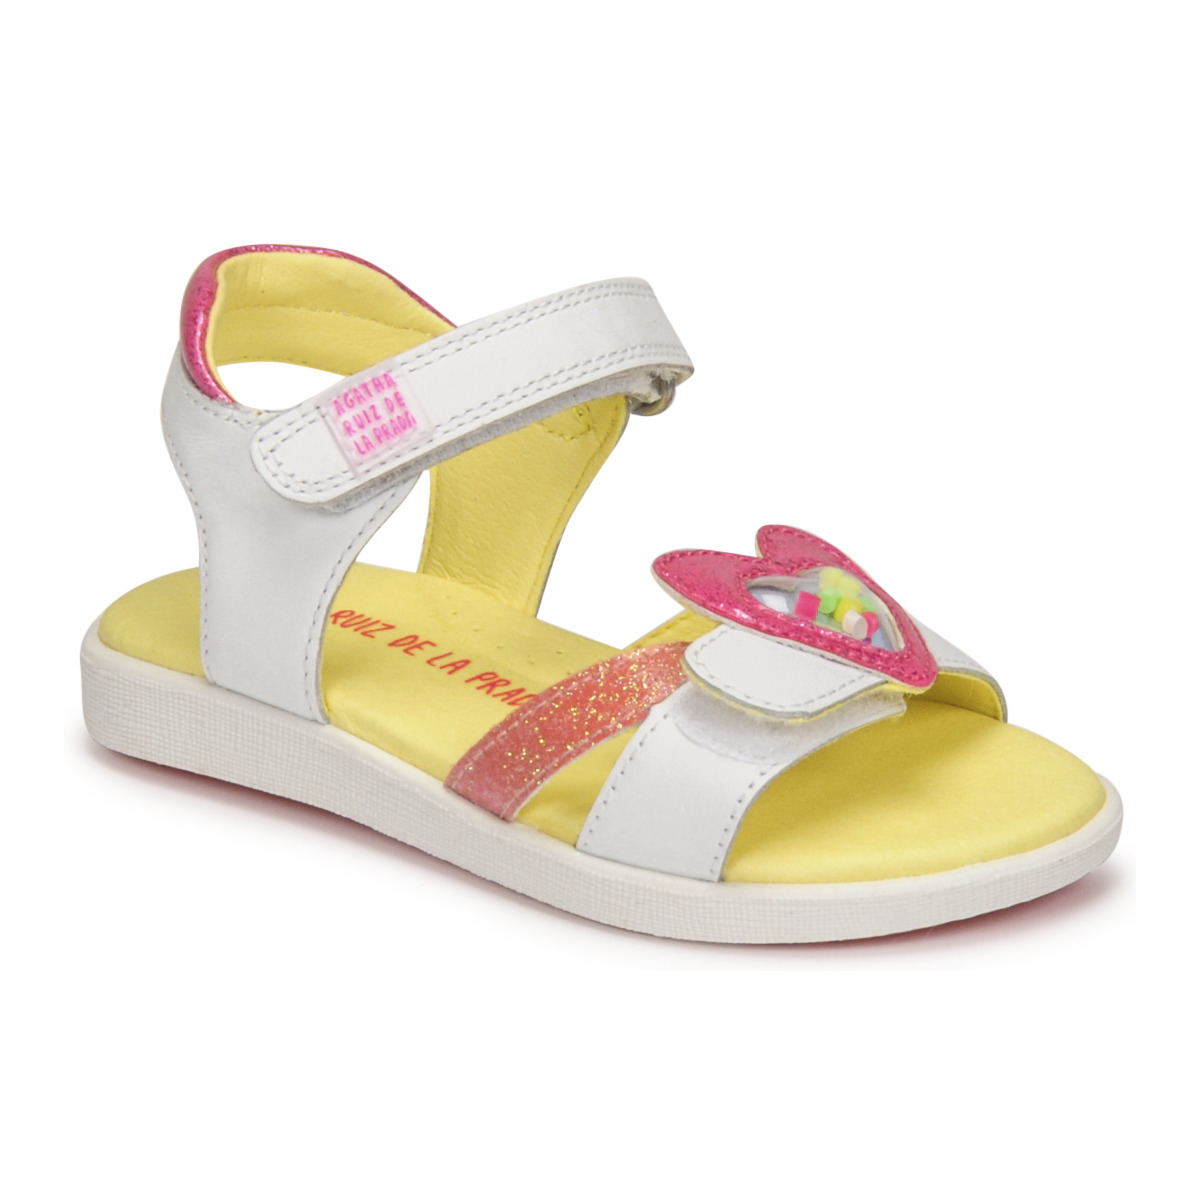 Schuhe Mädchen Sandalen / Sandaletten Agatha Ruiz de la Prada AITANA Weiss